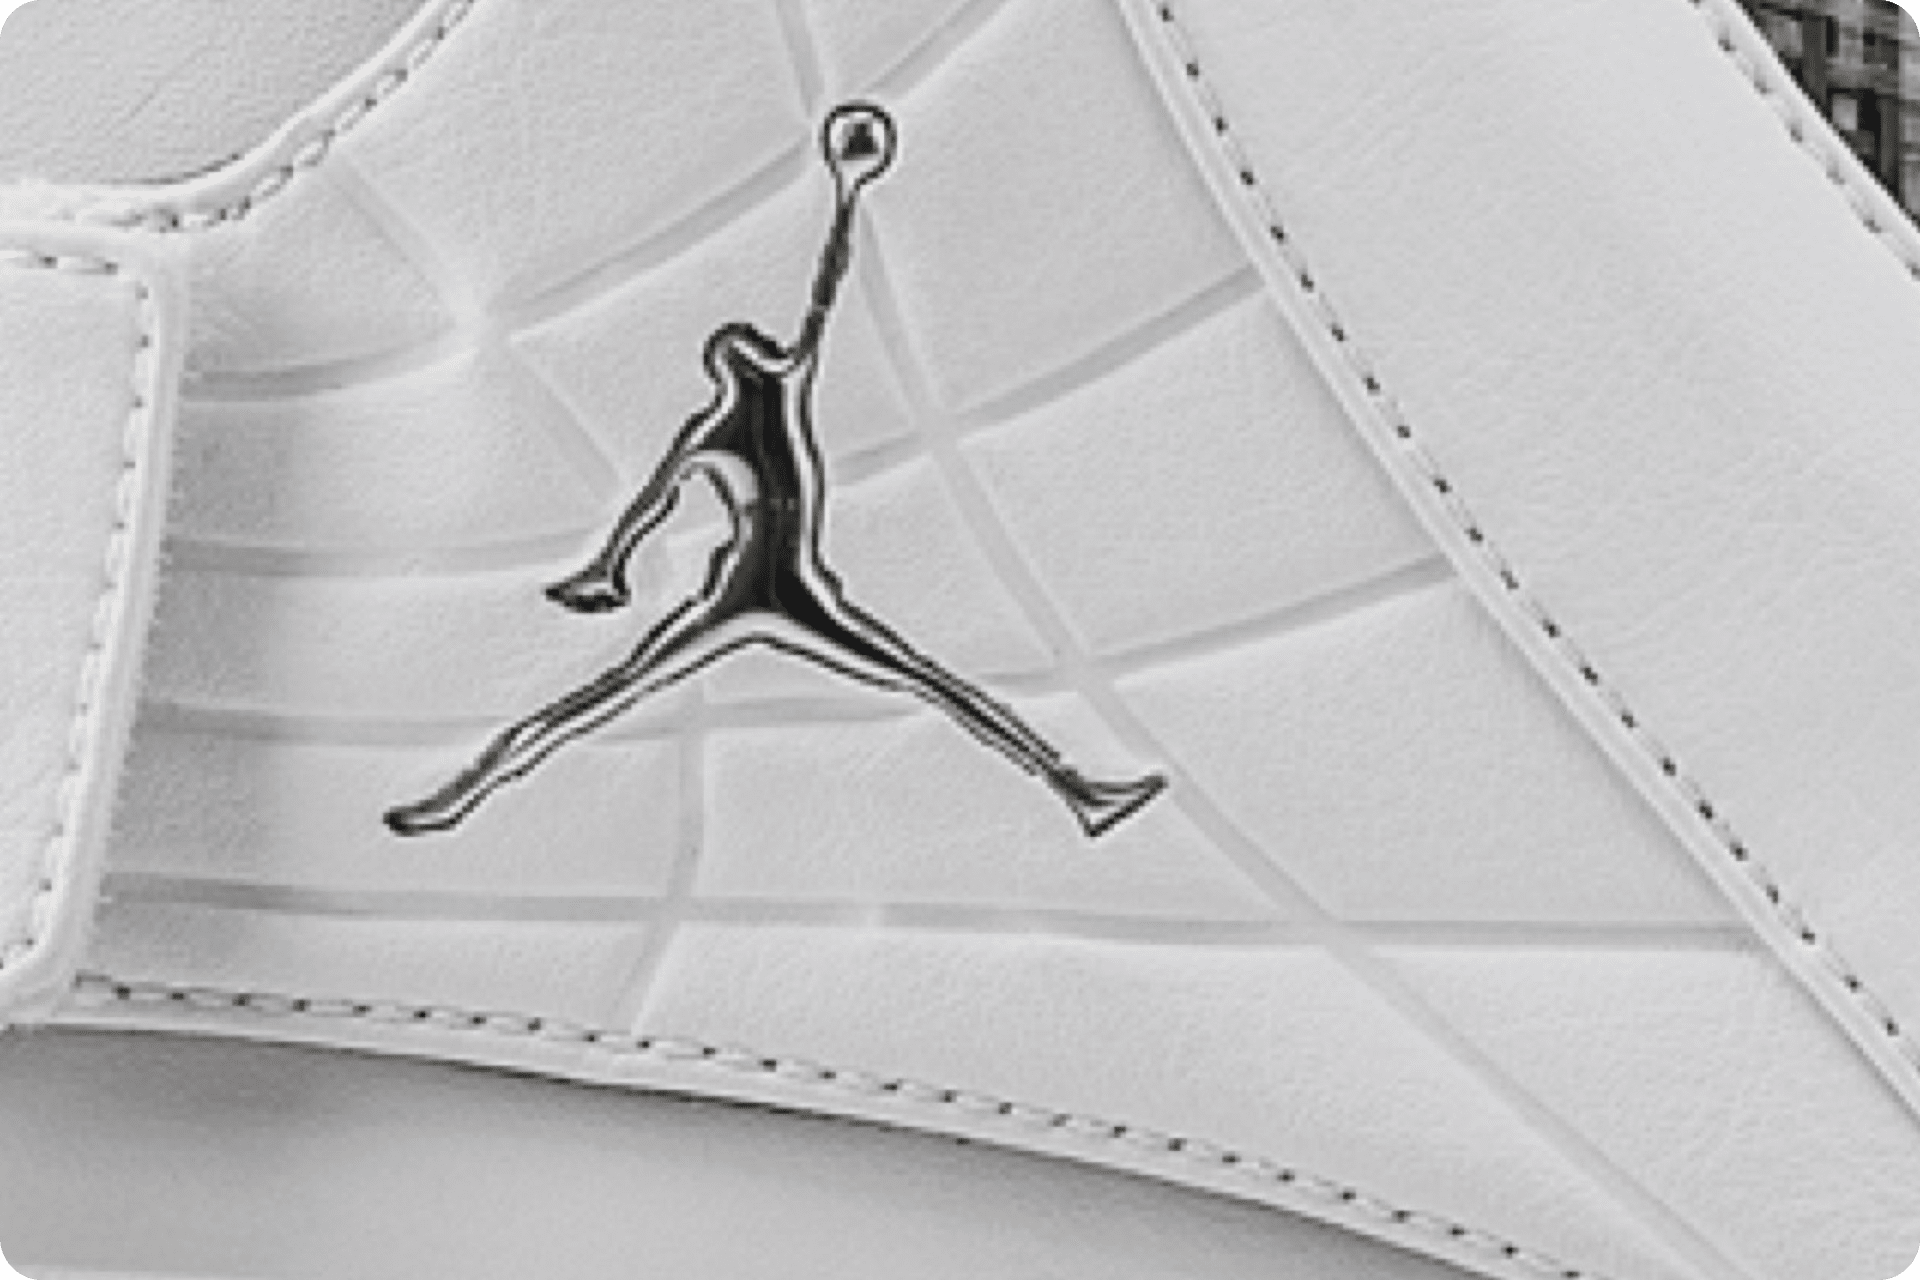 Air Jordan retro OG collection Nike.com